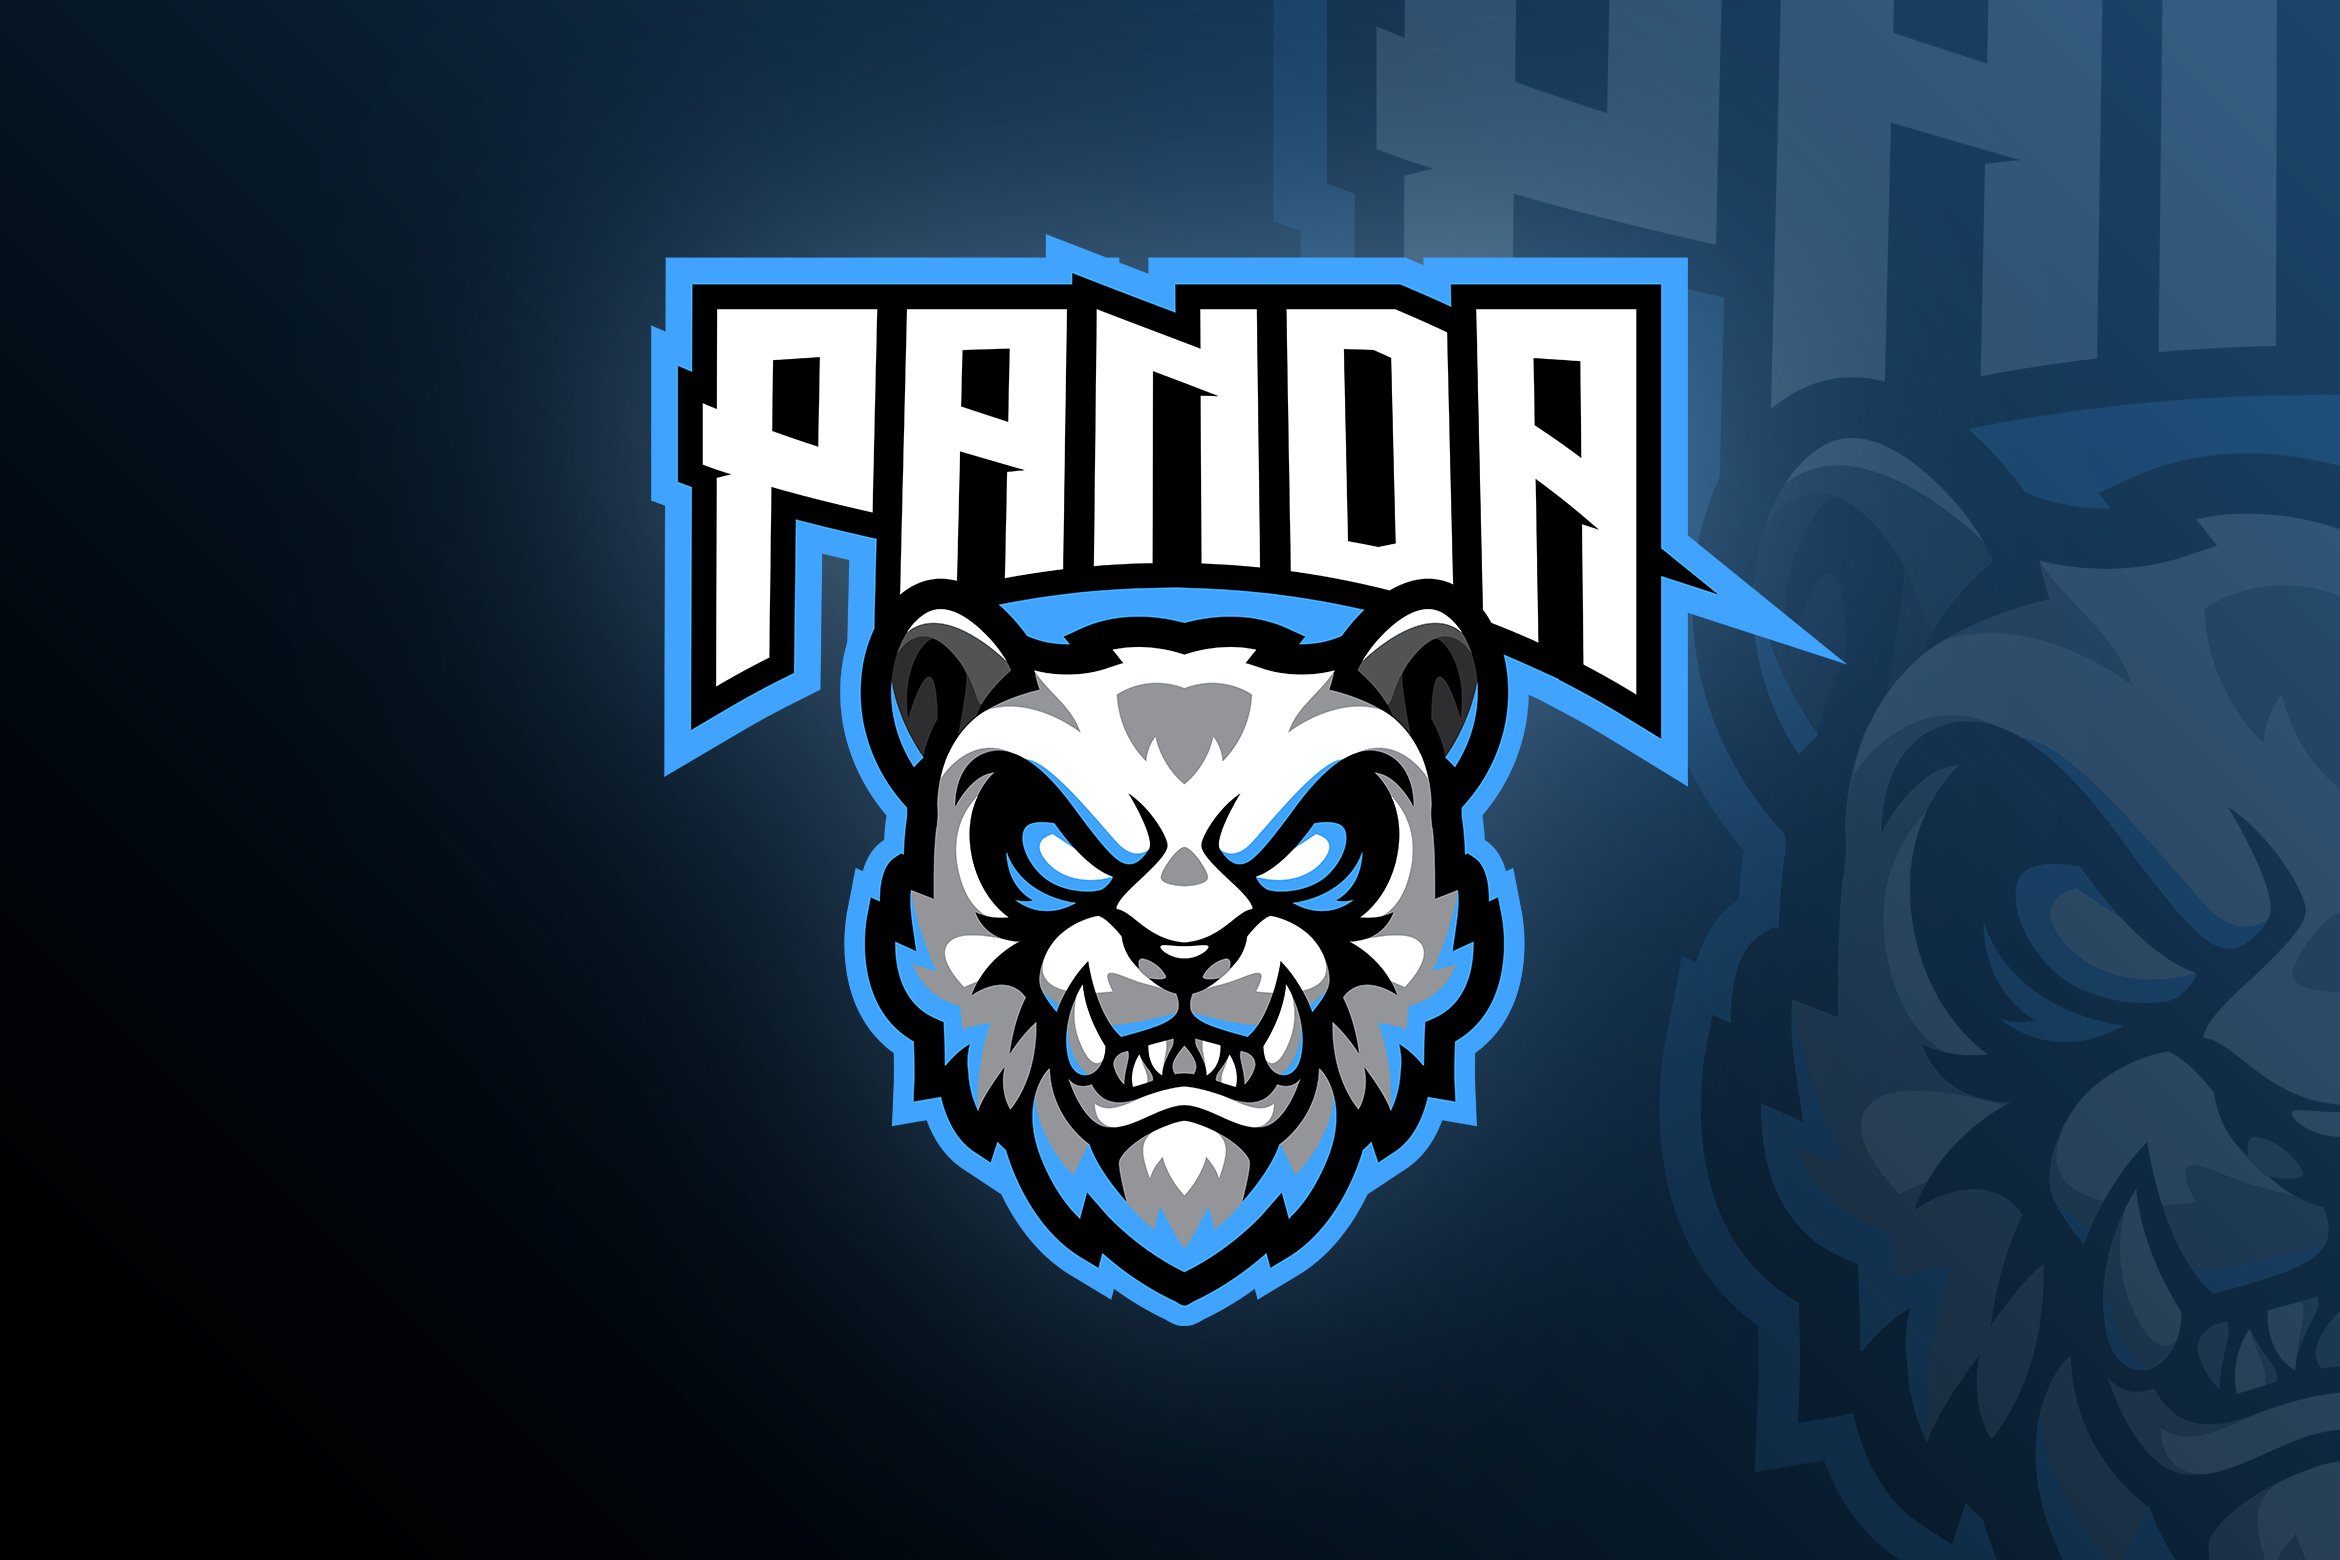 Panda Logo Template cover image.